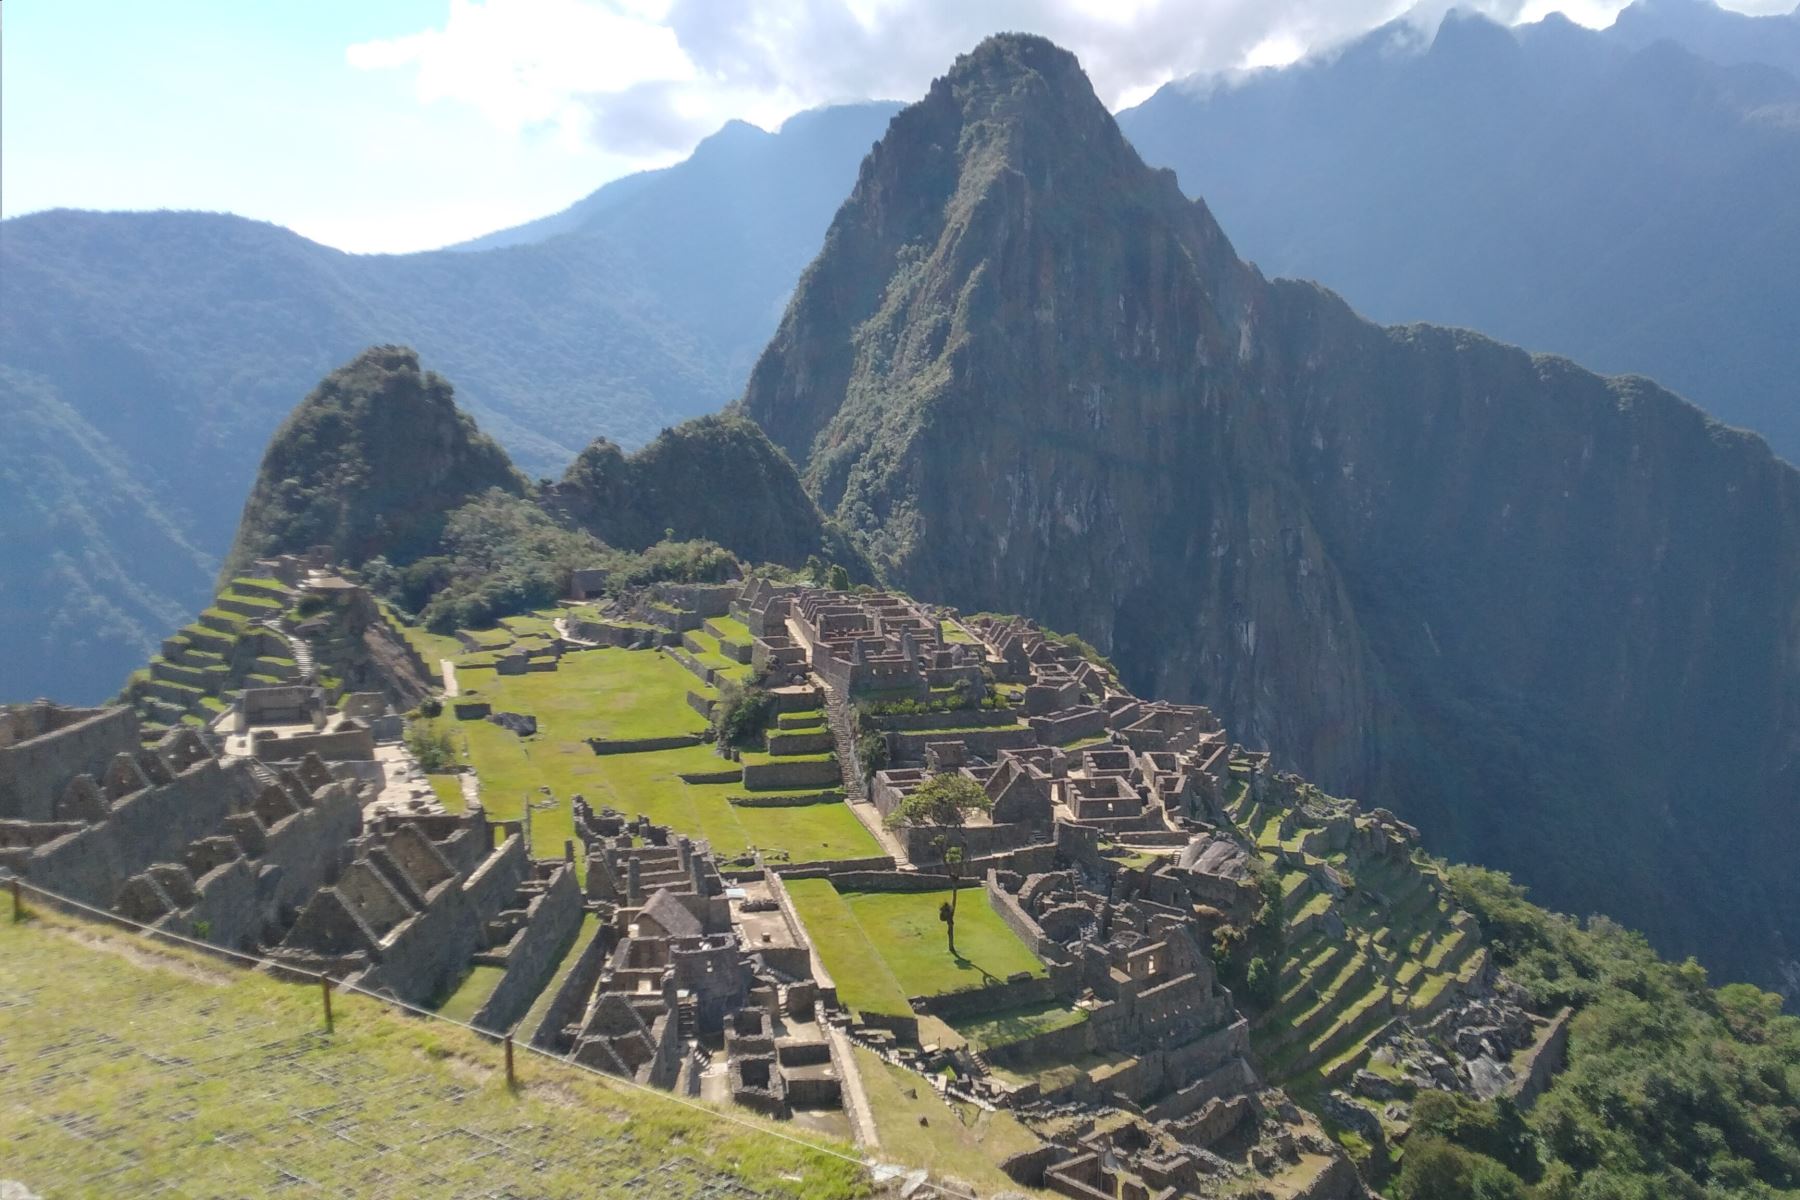 La ciudadela de Machu Picchu recibe por día entre 3,800 y 3,900 visitantes nacionales y extranjeros. Foto: DDC Cusco